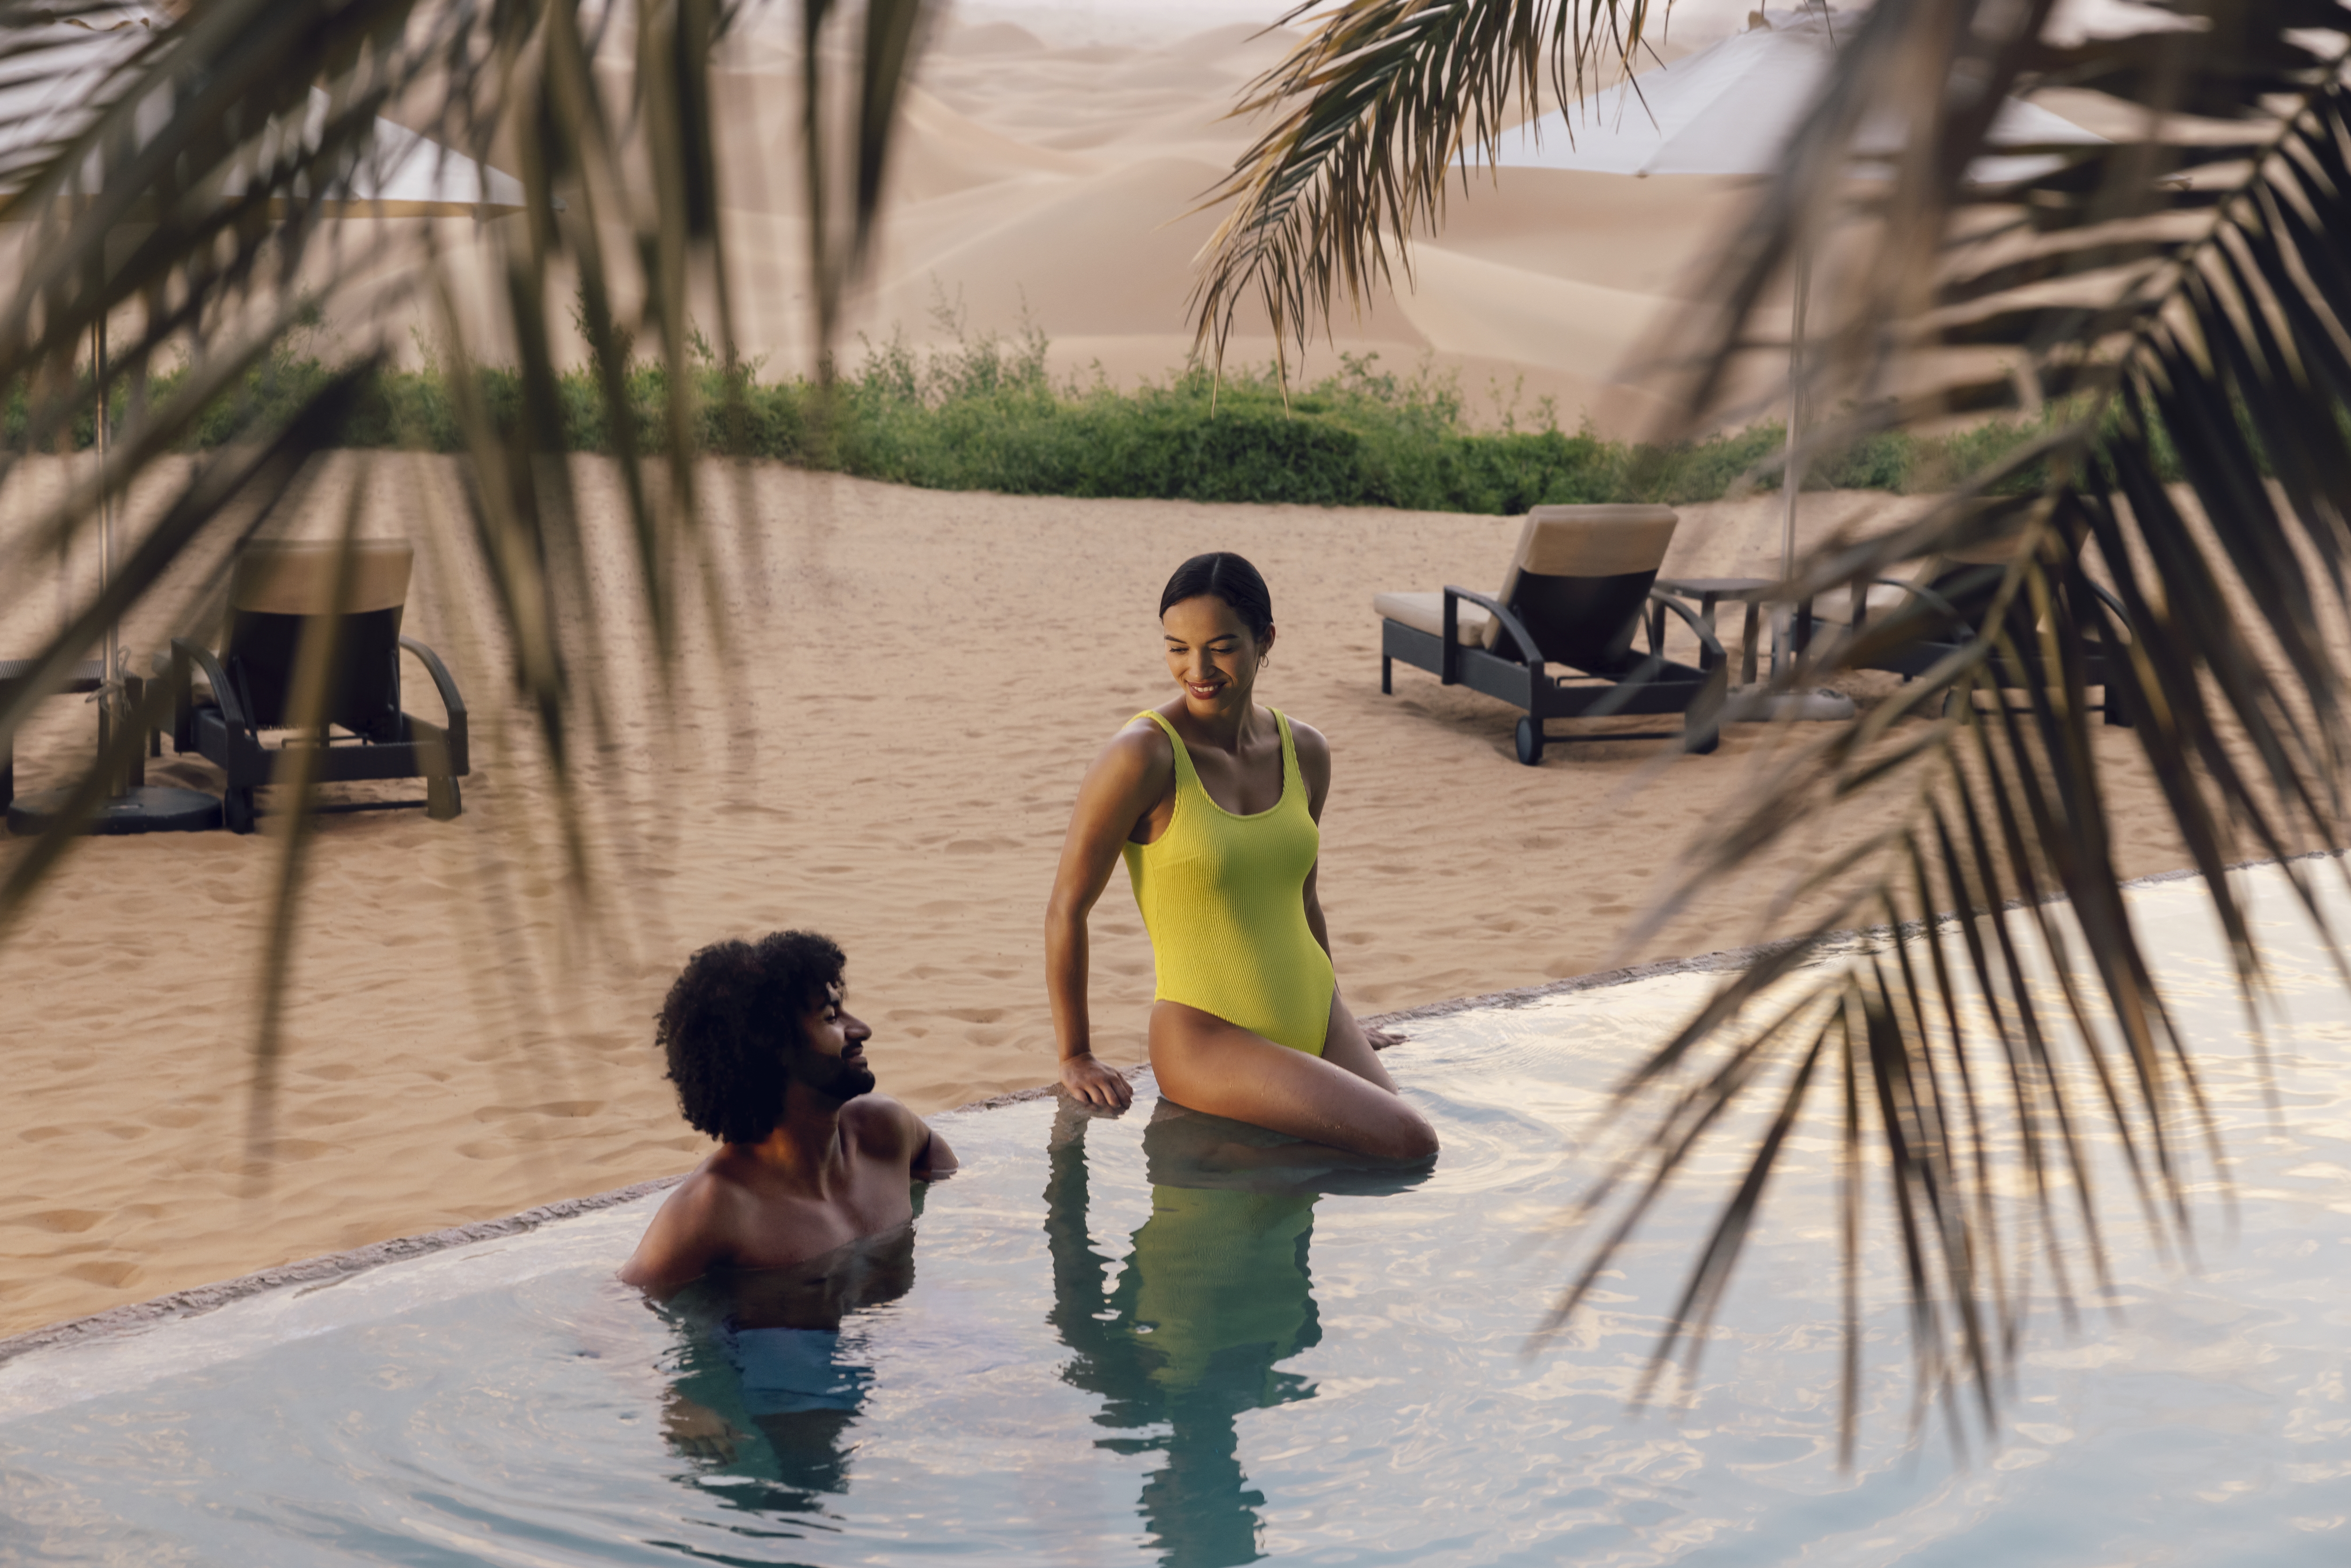 Western couple in pool at Telal resort in Abu Dhabi dunes